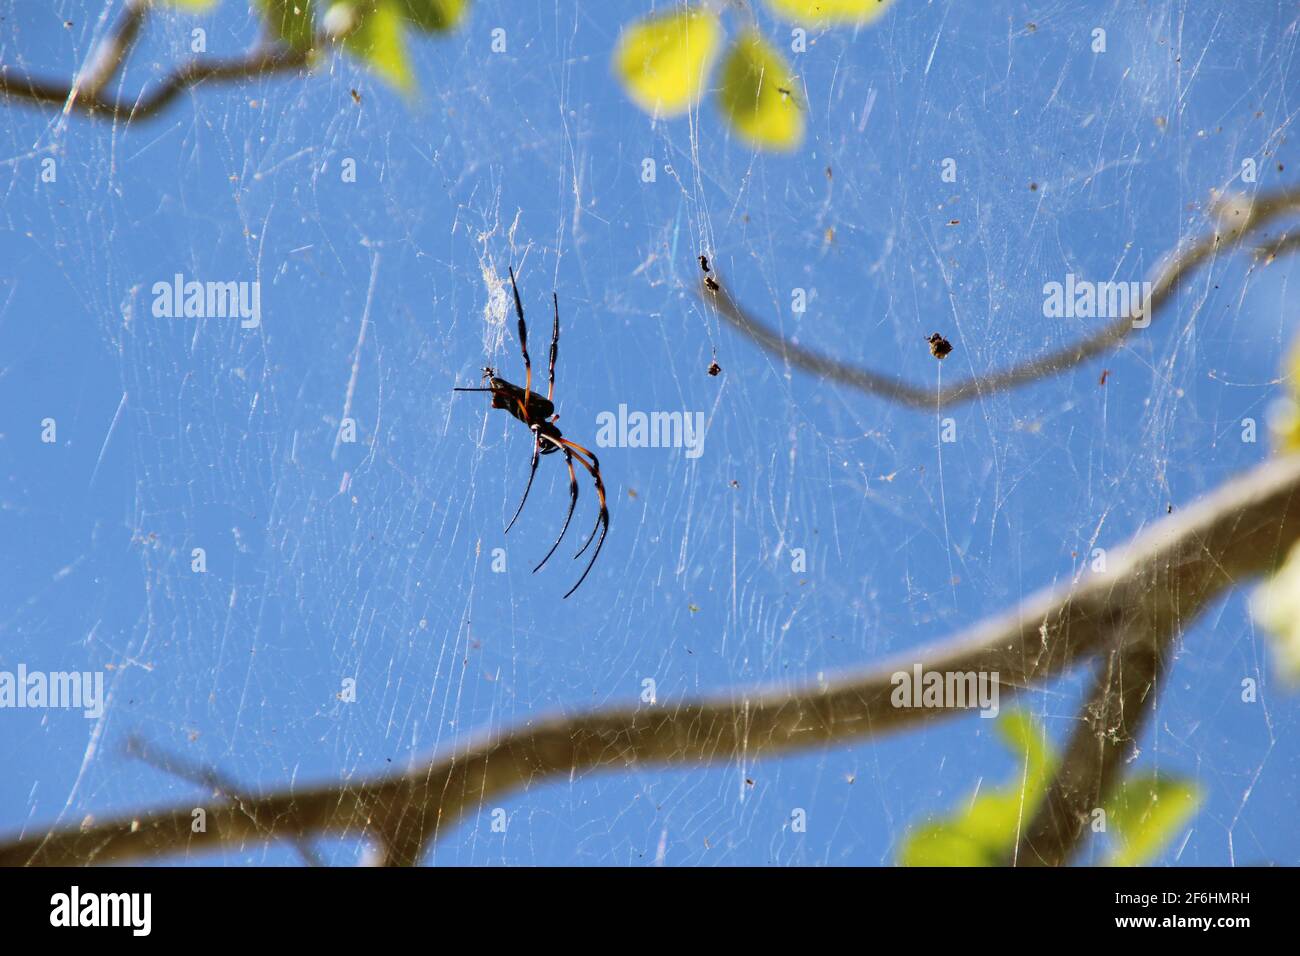 Spinne in Nahaufnahme mit blauem Himmel Hintergrund (Asien) Stockfoto